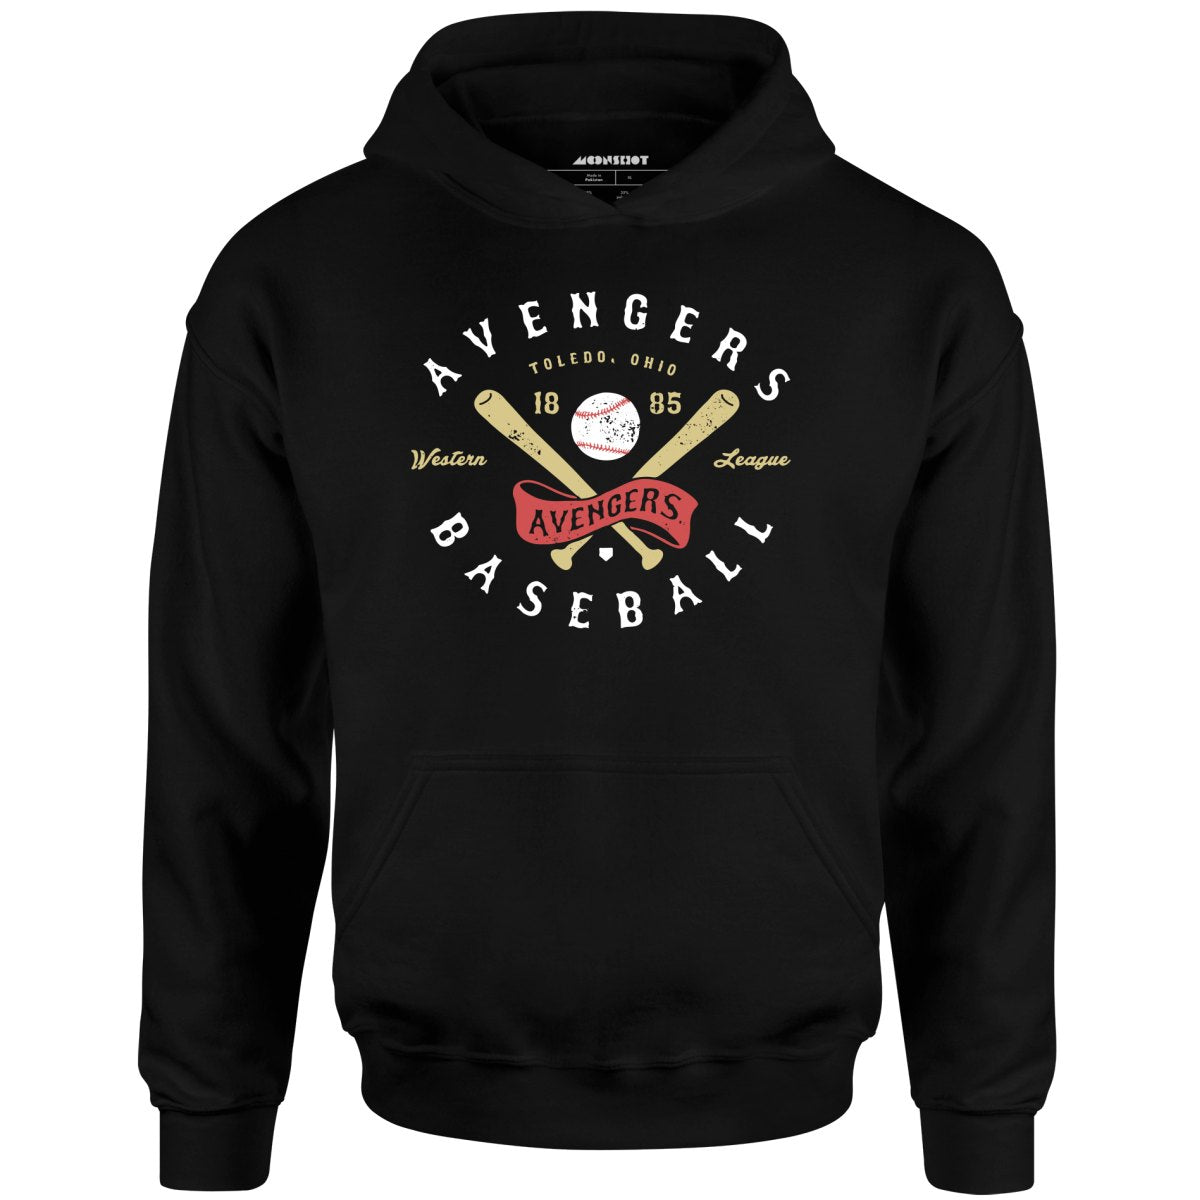 Toledo Avengers - Ohio - Vintage Defunct Baseball Teams - Unisex Hoodie